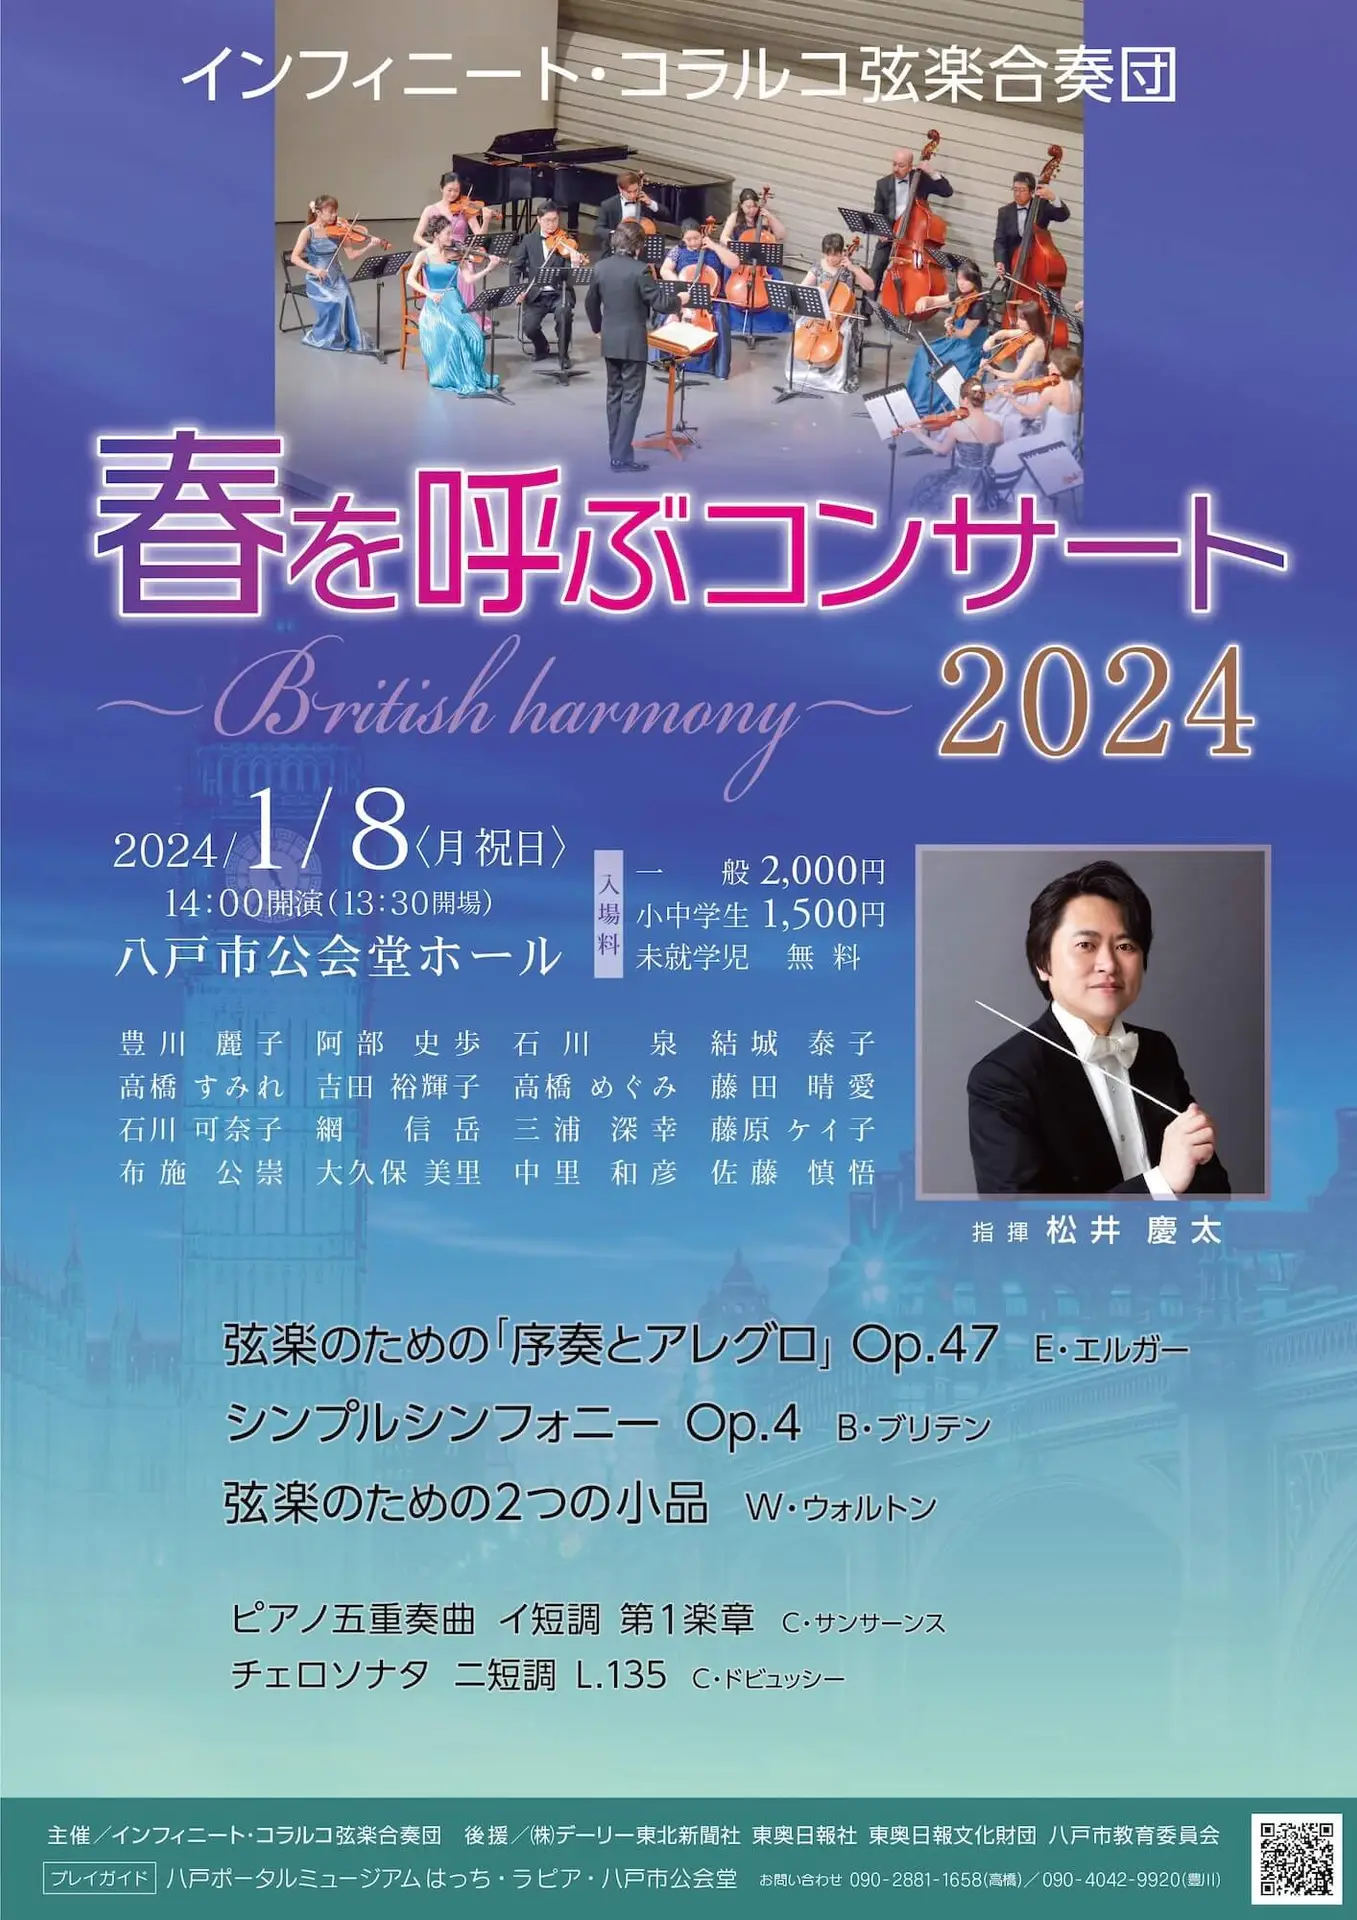 インフィニート・コラルコ弦楽合奏団 - 春を呼ぶコンサート2024 | 青森県八戸市